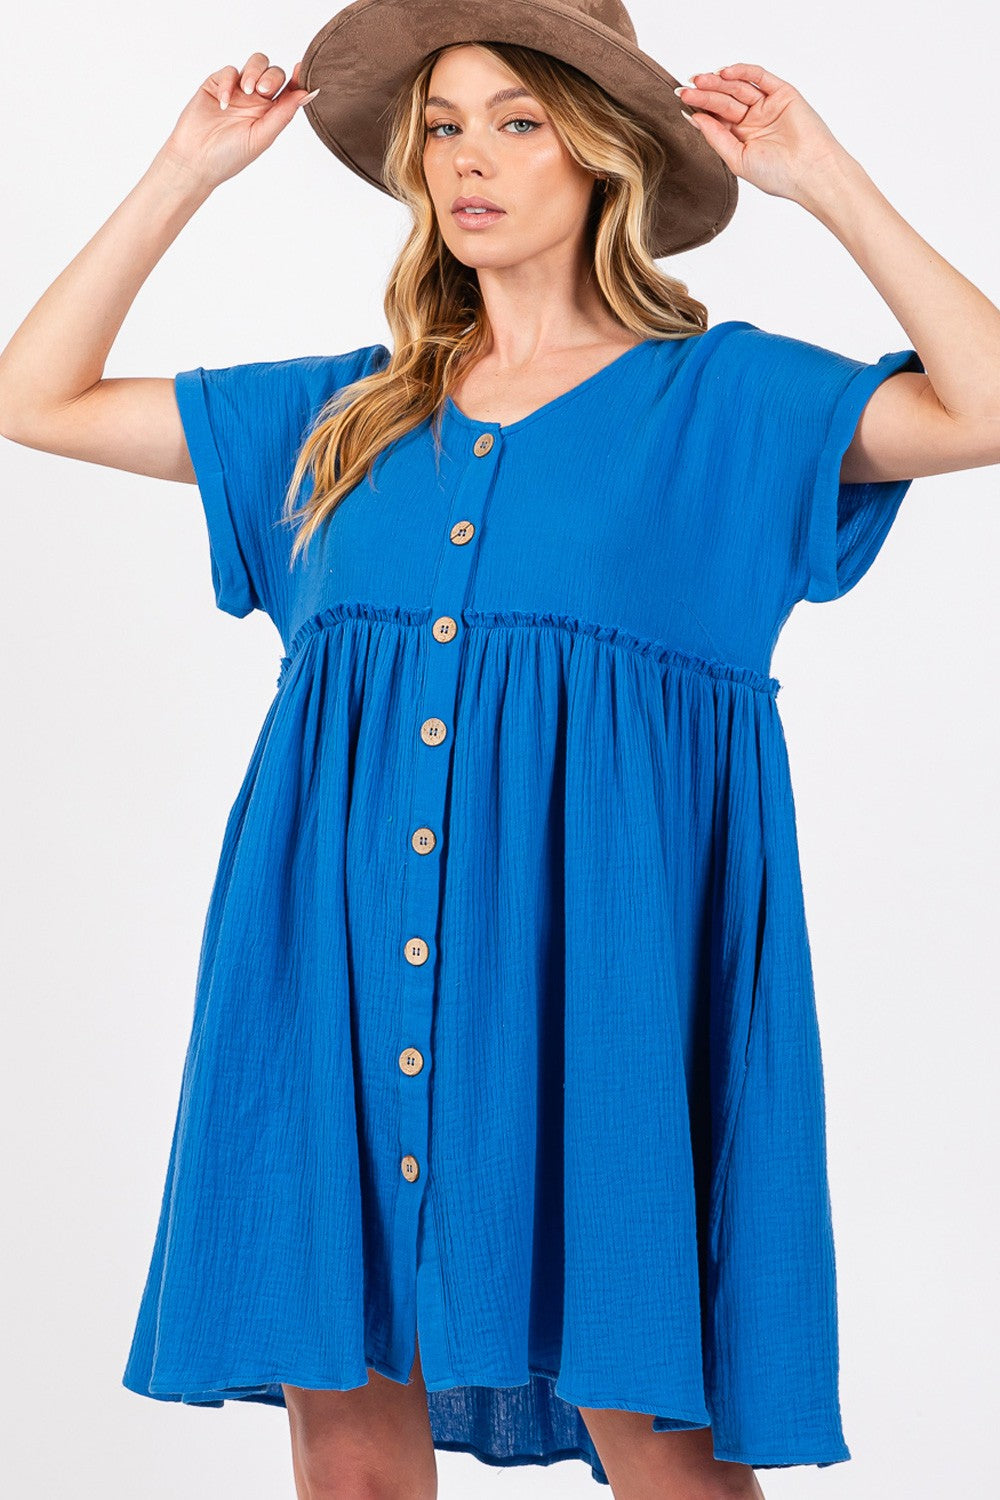 SAGE + FIG Blue Button Up Short Sleeve Dress Trendsi